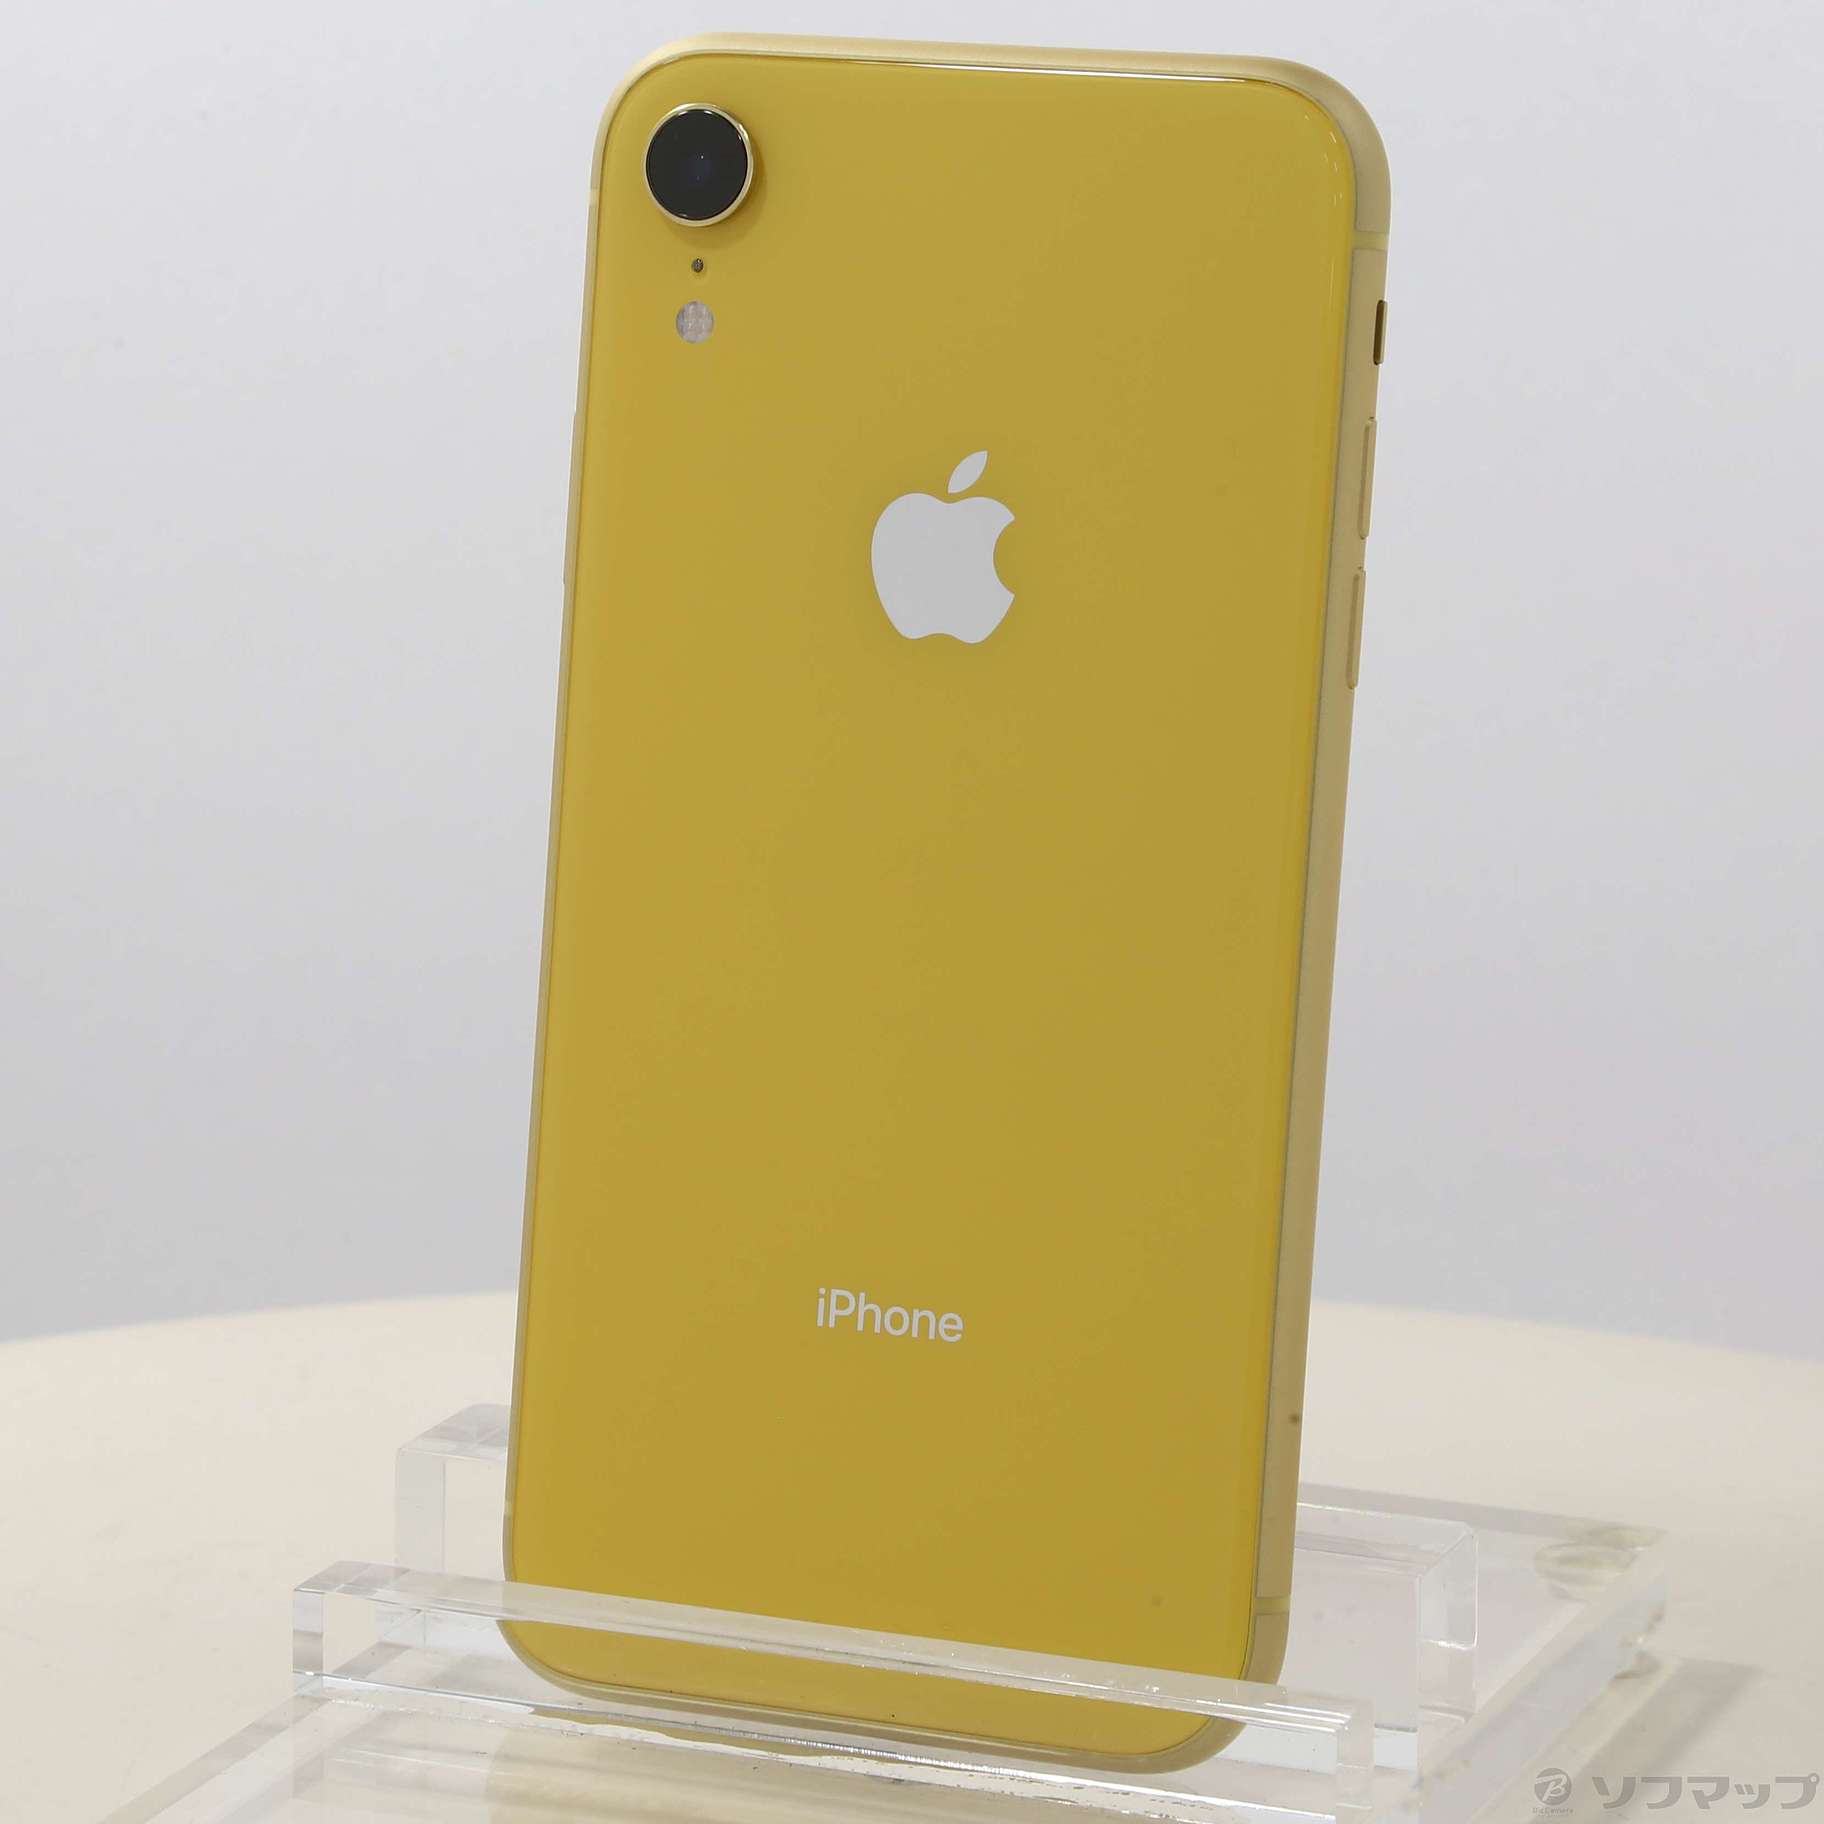 新品 iPhoneXR 64GB simロック解除済み イエロー yellow - www